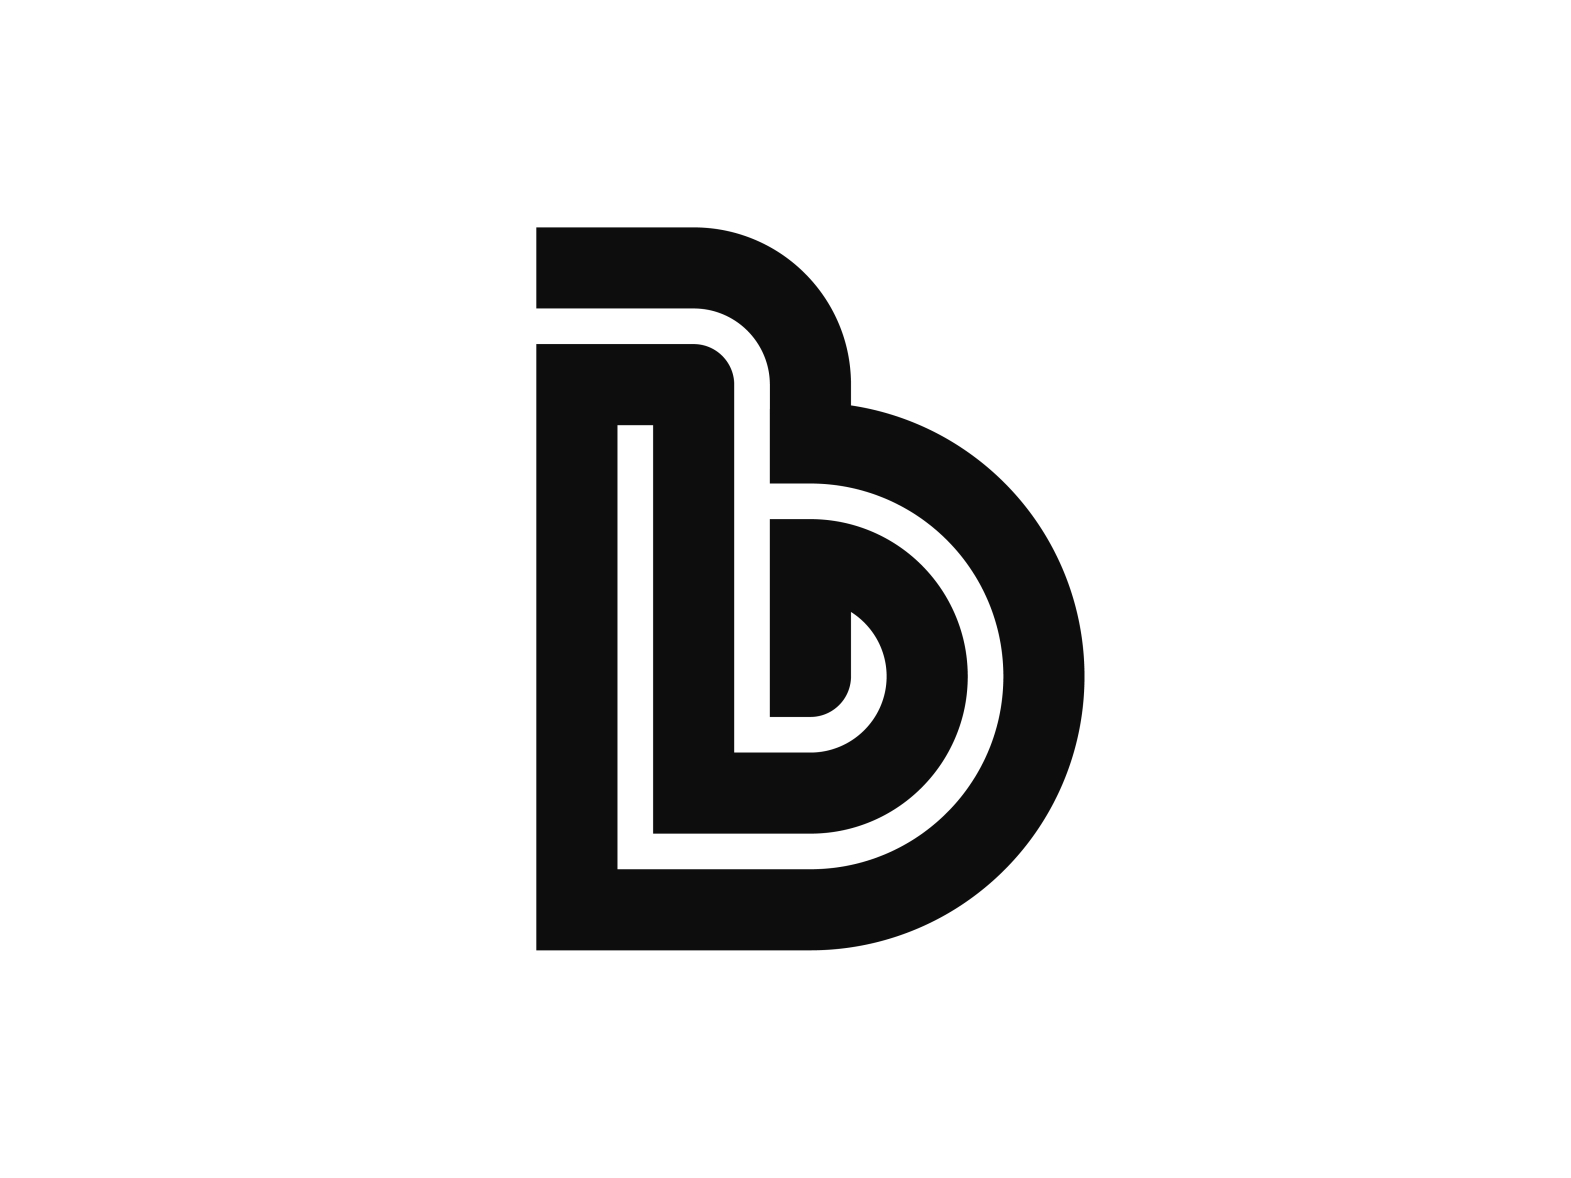 B logo by logojoss on Dribbble